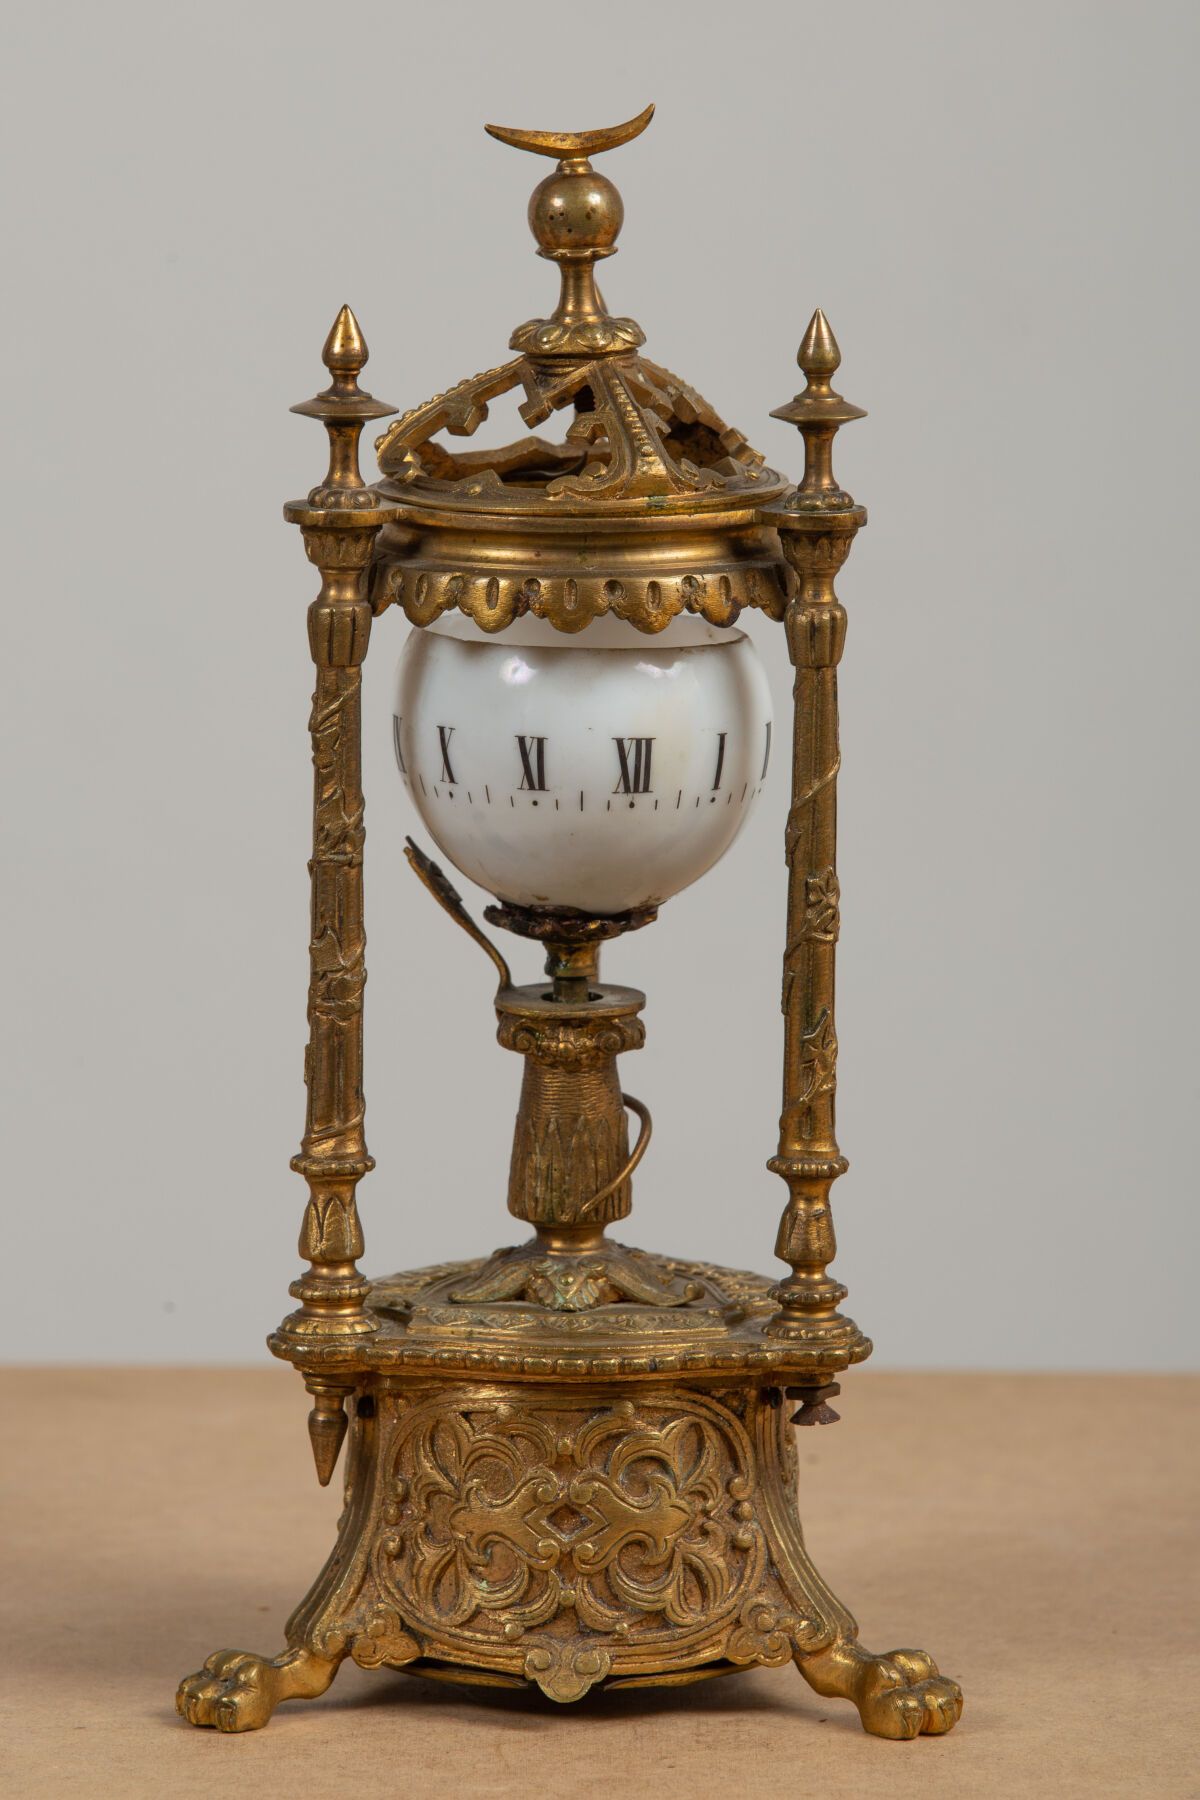 Null JEUNET发明家。
鎏金铜质旋转表盘时钟，乳白色表盘和罗马数字。
拿破仑三世时期。
高_25厘米，宽_13厘米，长_11厘米